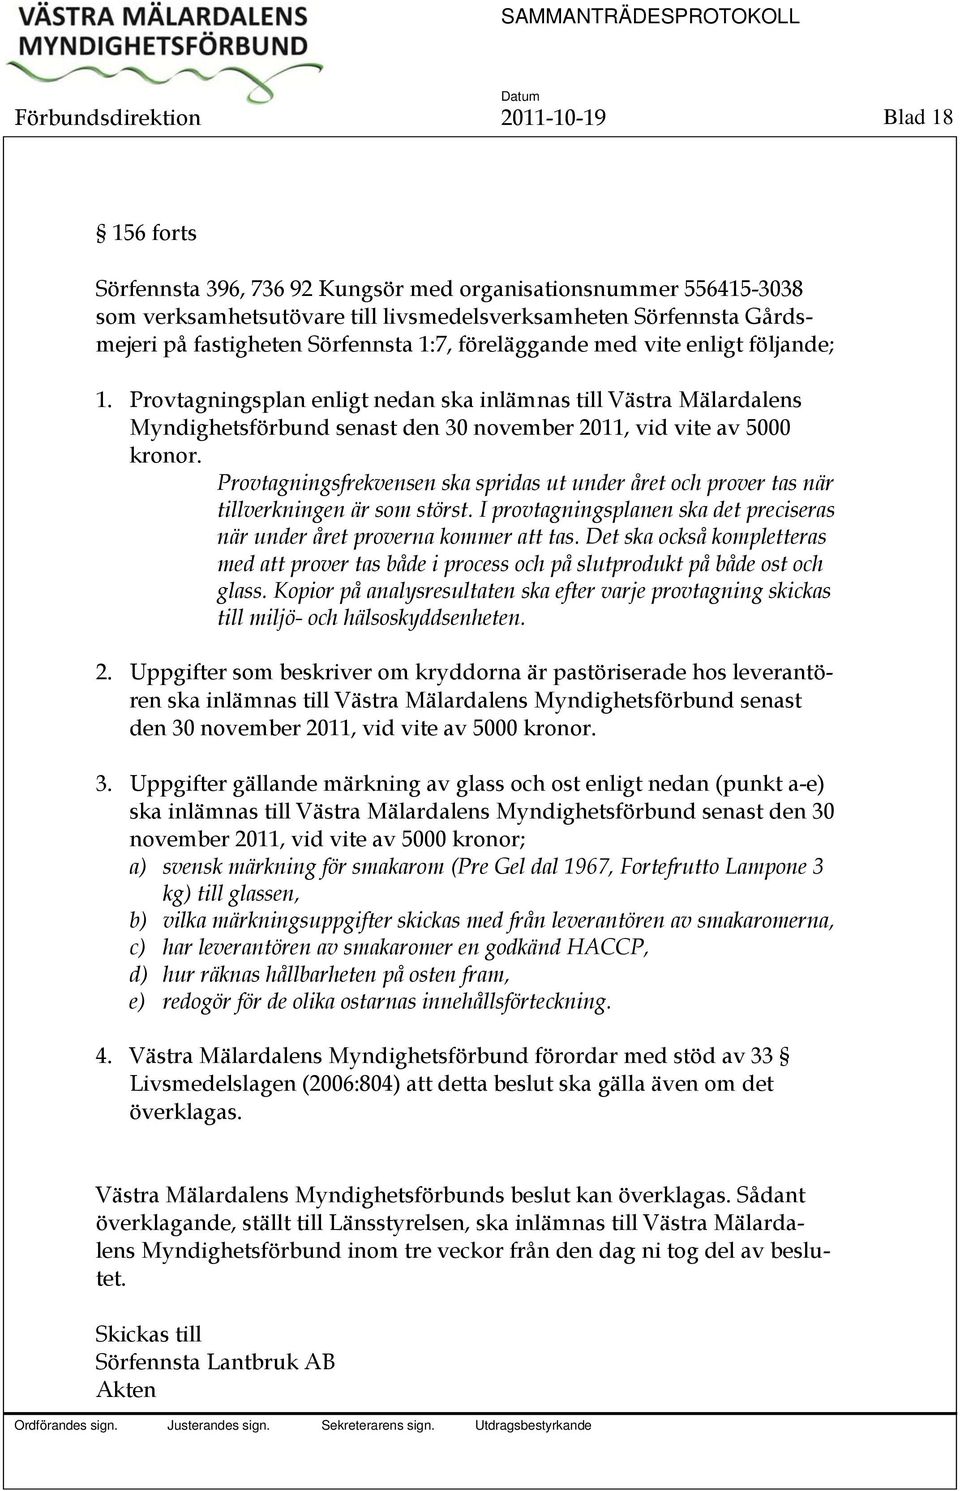 Provtagningsplan enligt nedan ska inlämnas till Västra Mälardalens Myndighetsförbund senast den 30 november 2011, vid vite av 5000 kronor.